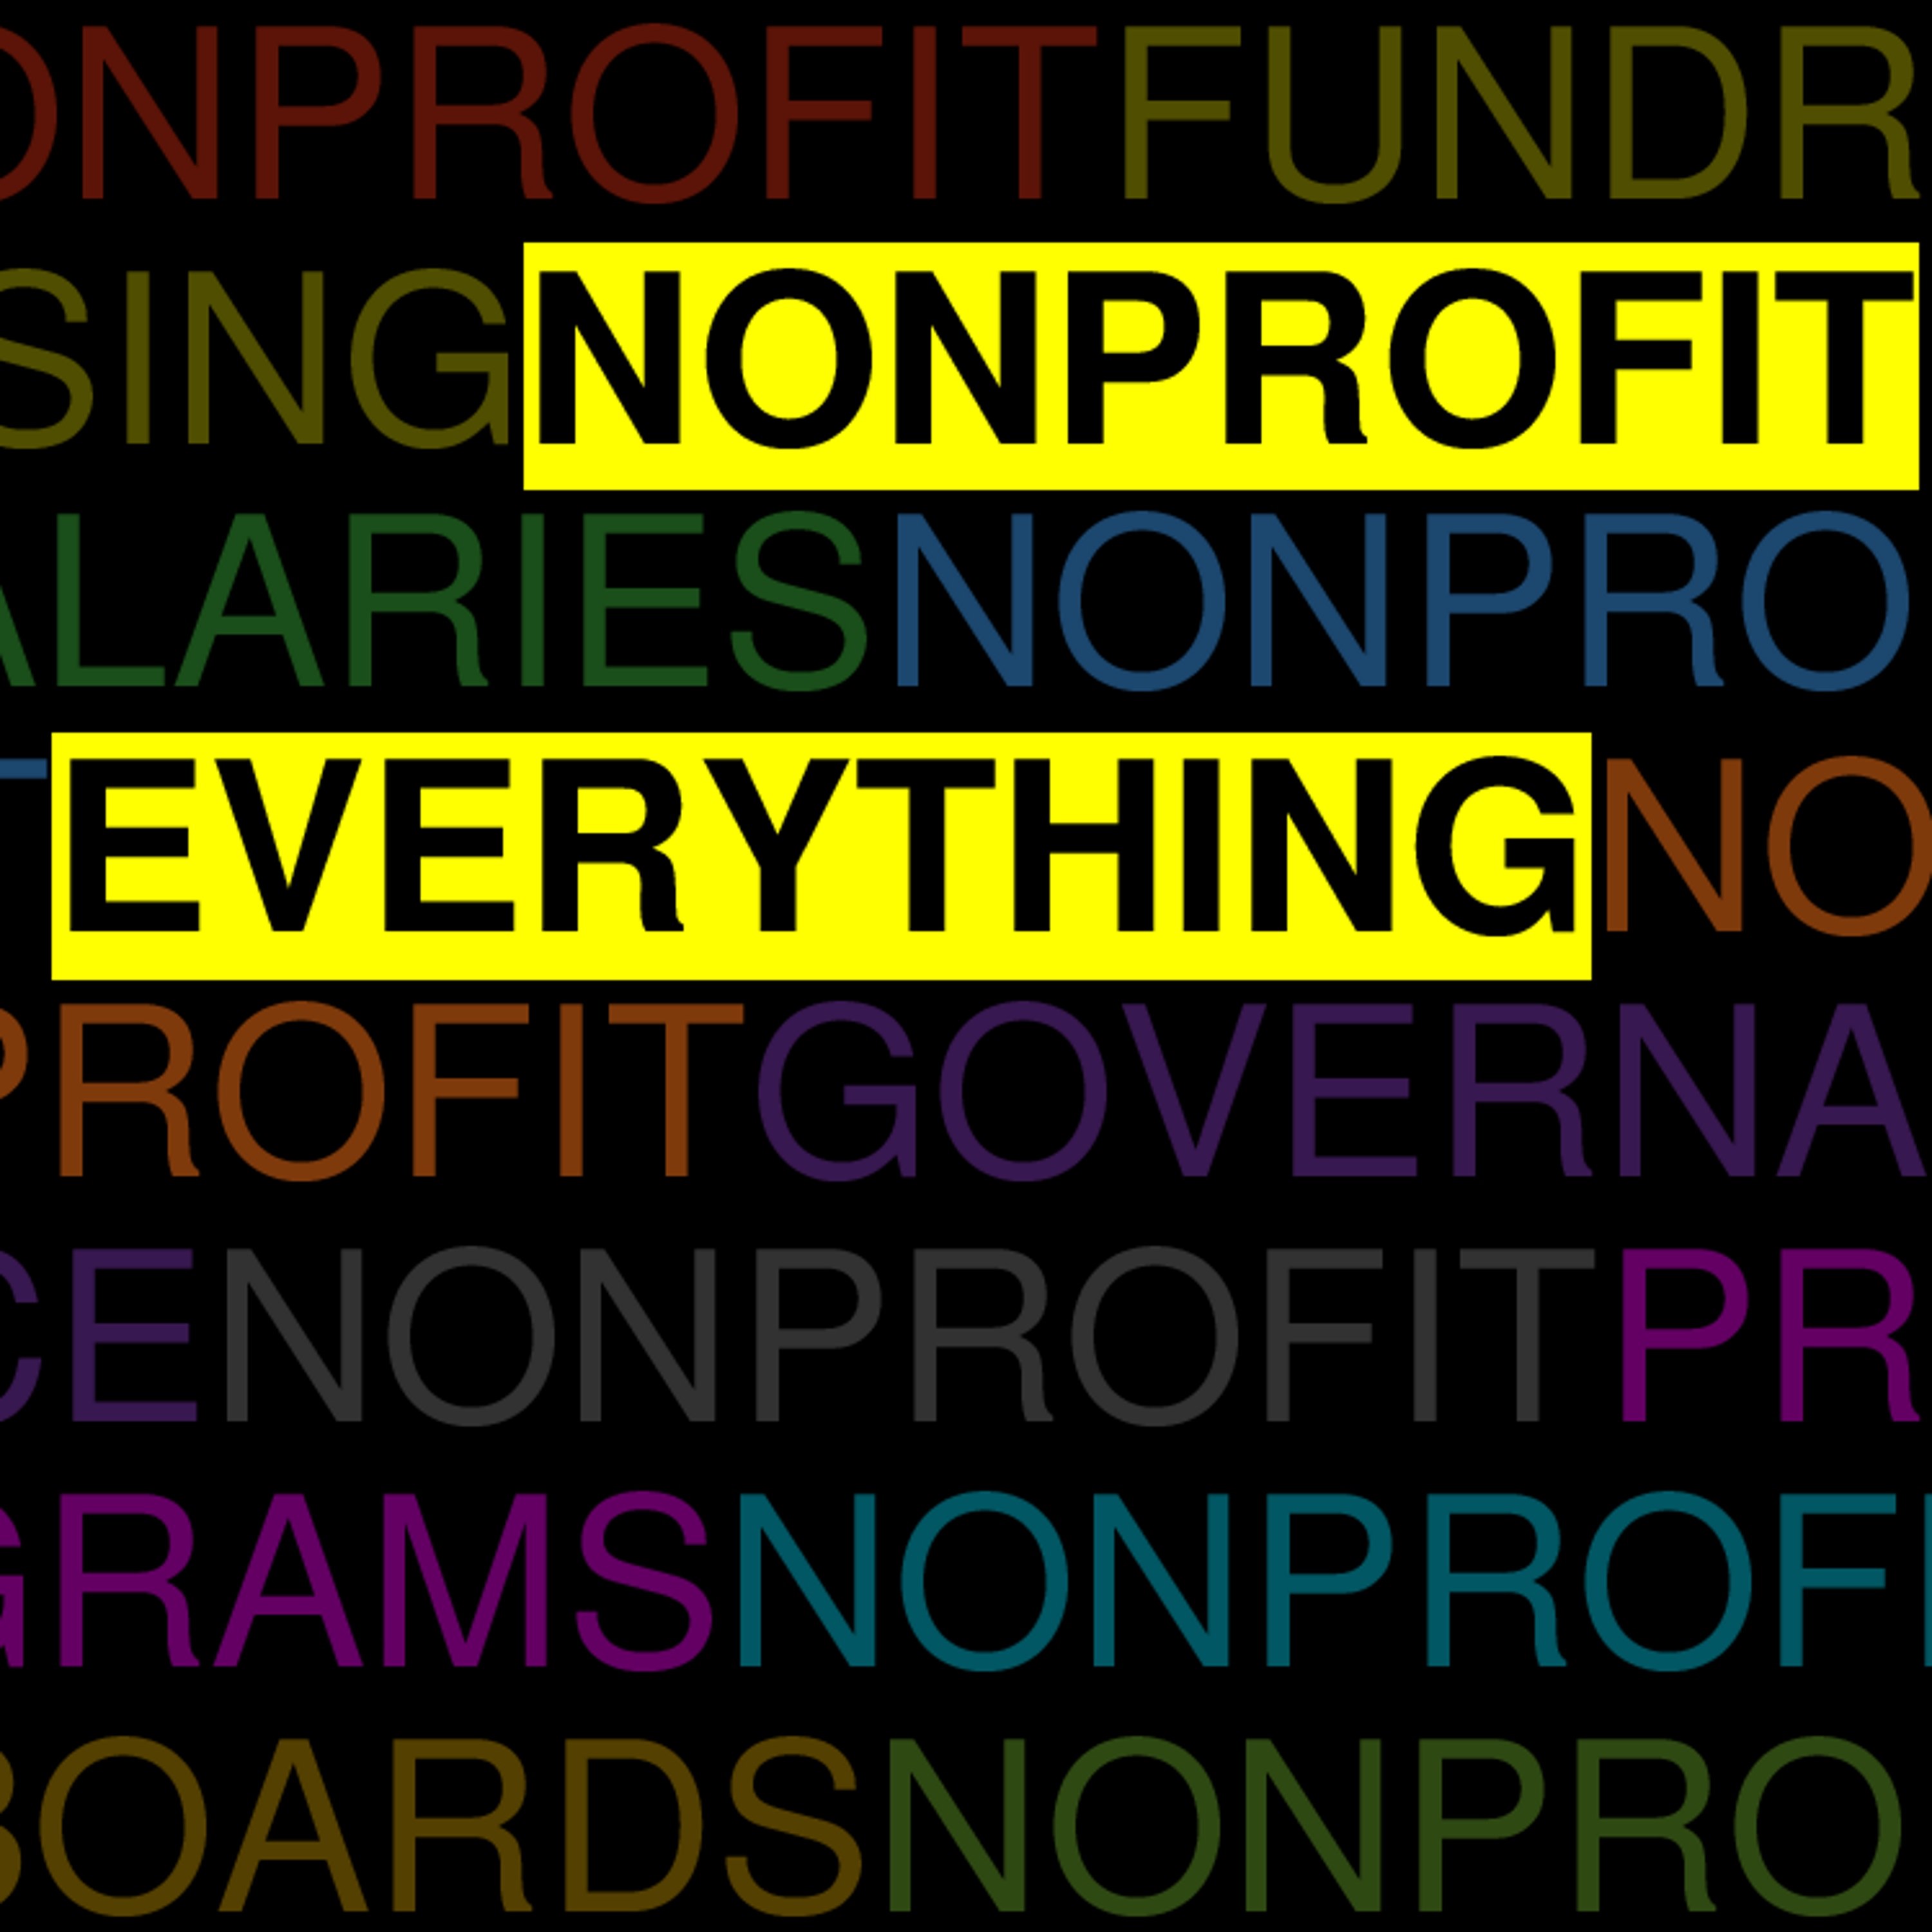 Nonprofit Everything